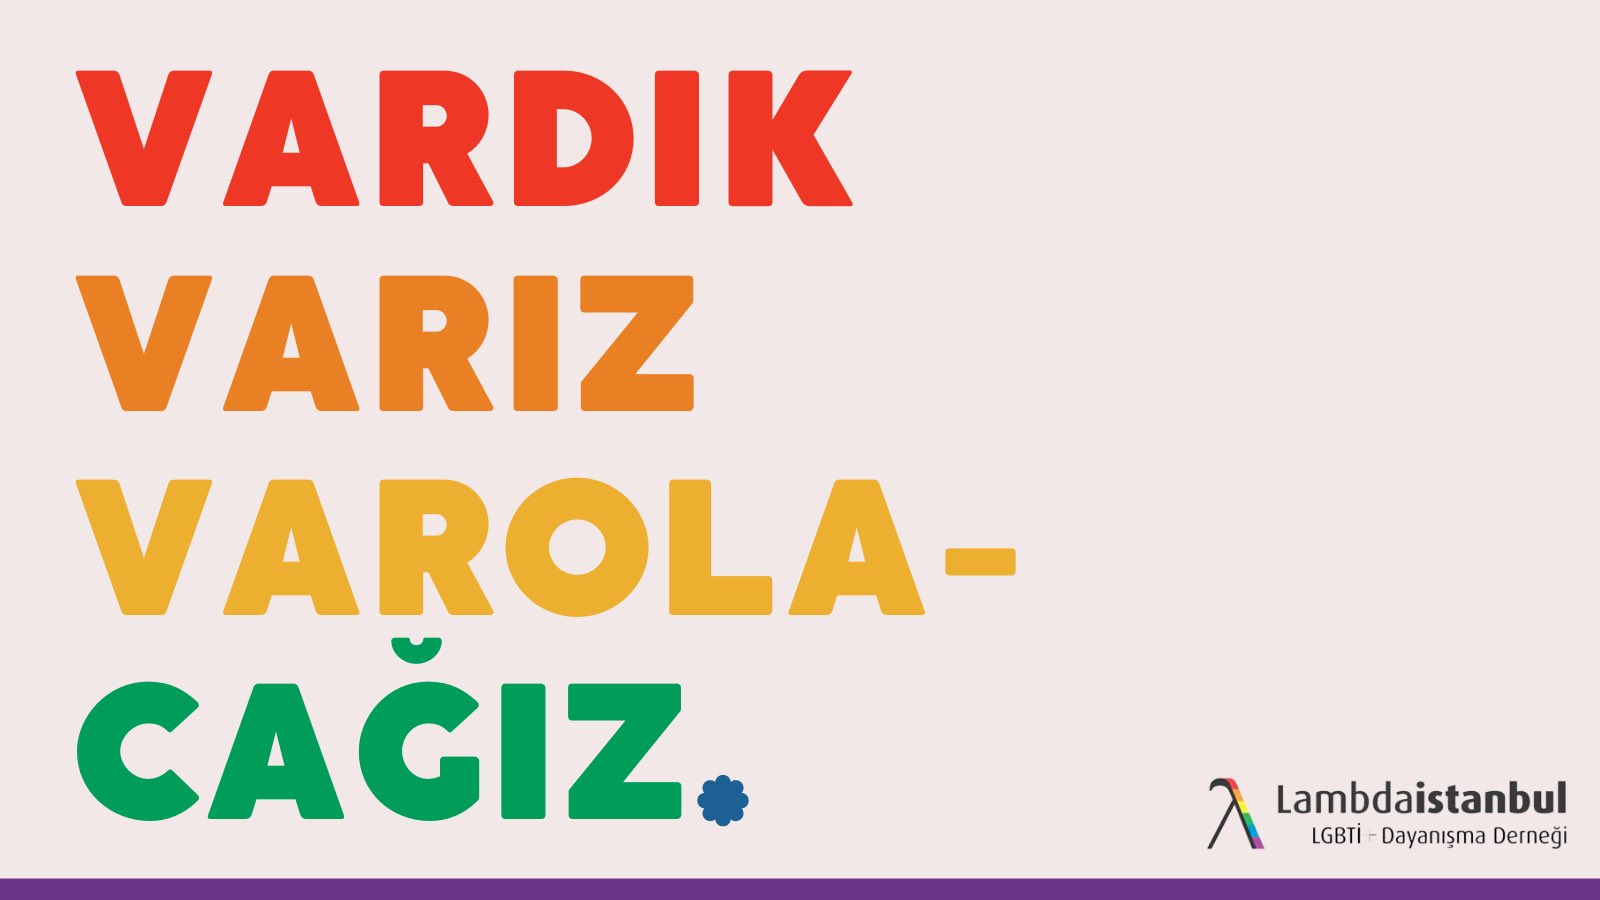 Lambdaistanbul: Onlar gidecek, biz kalacağız! | Kaos GL - LGBTİ+ Haber Portalı Haber